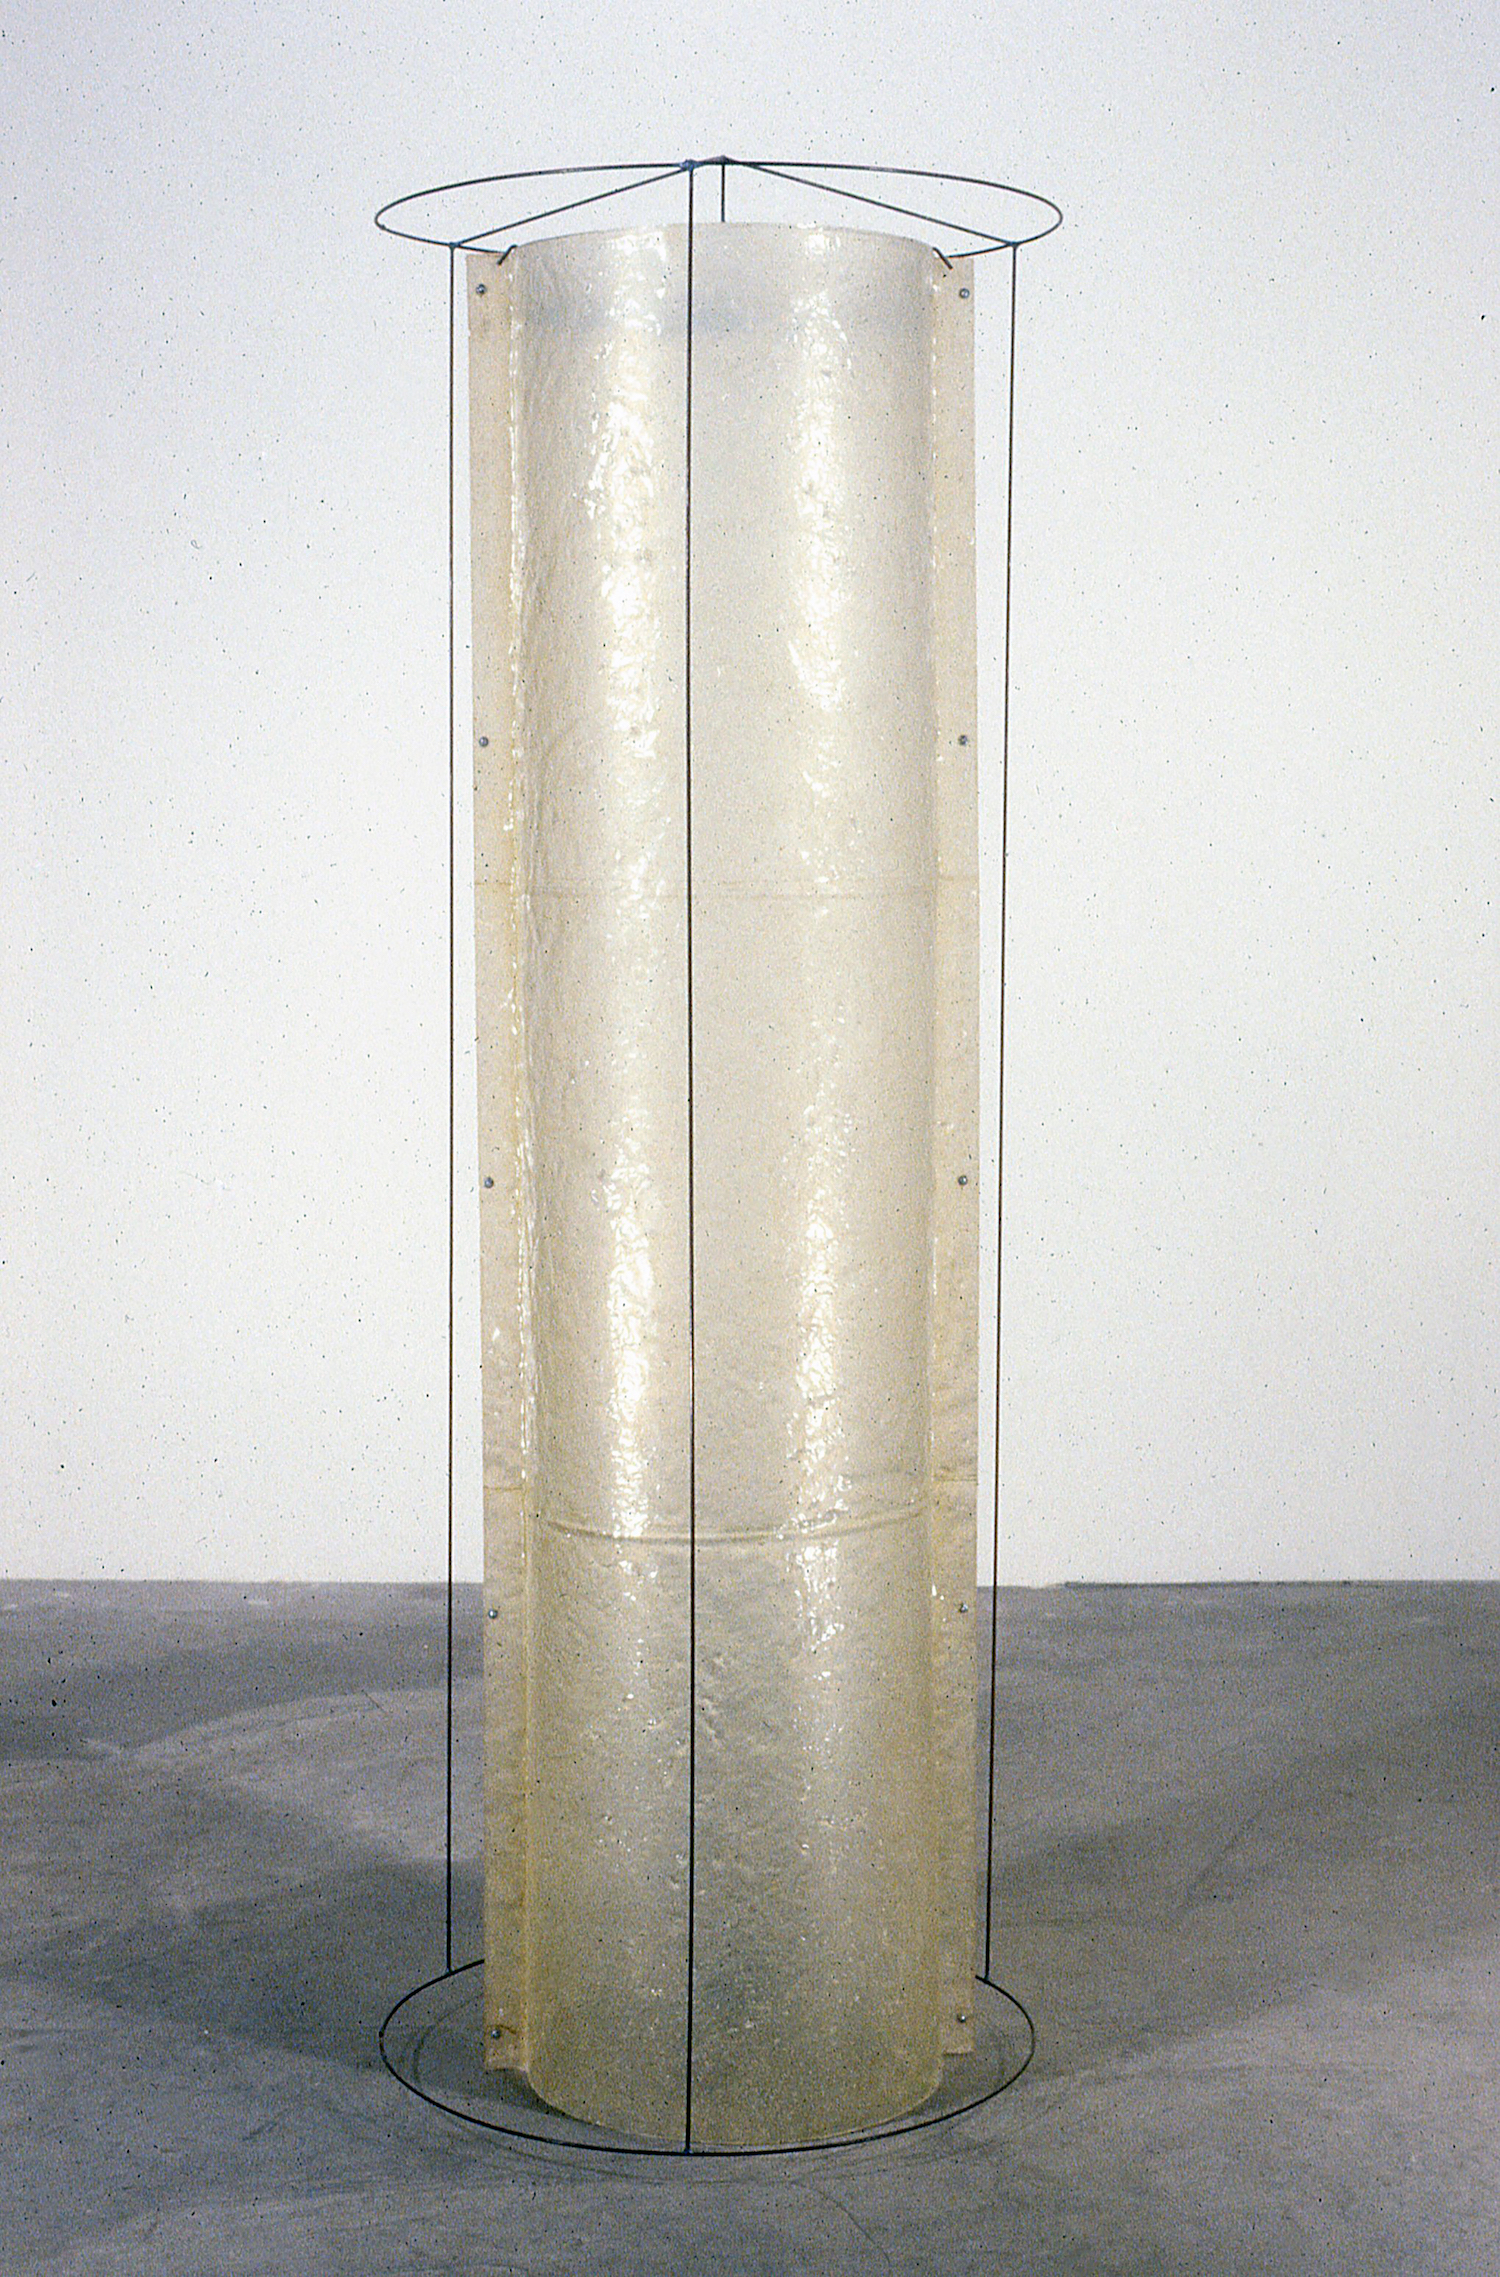  Monk (2006), resin, pigment, steel 